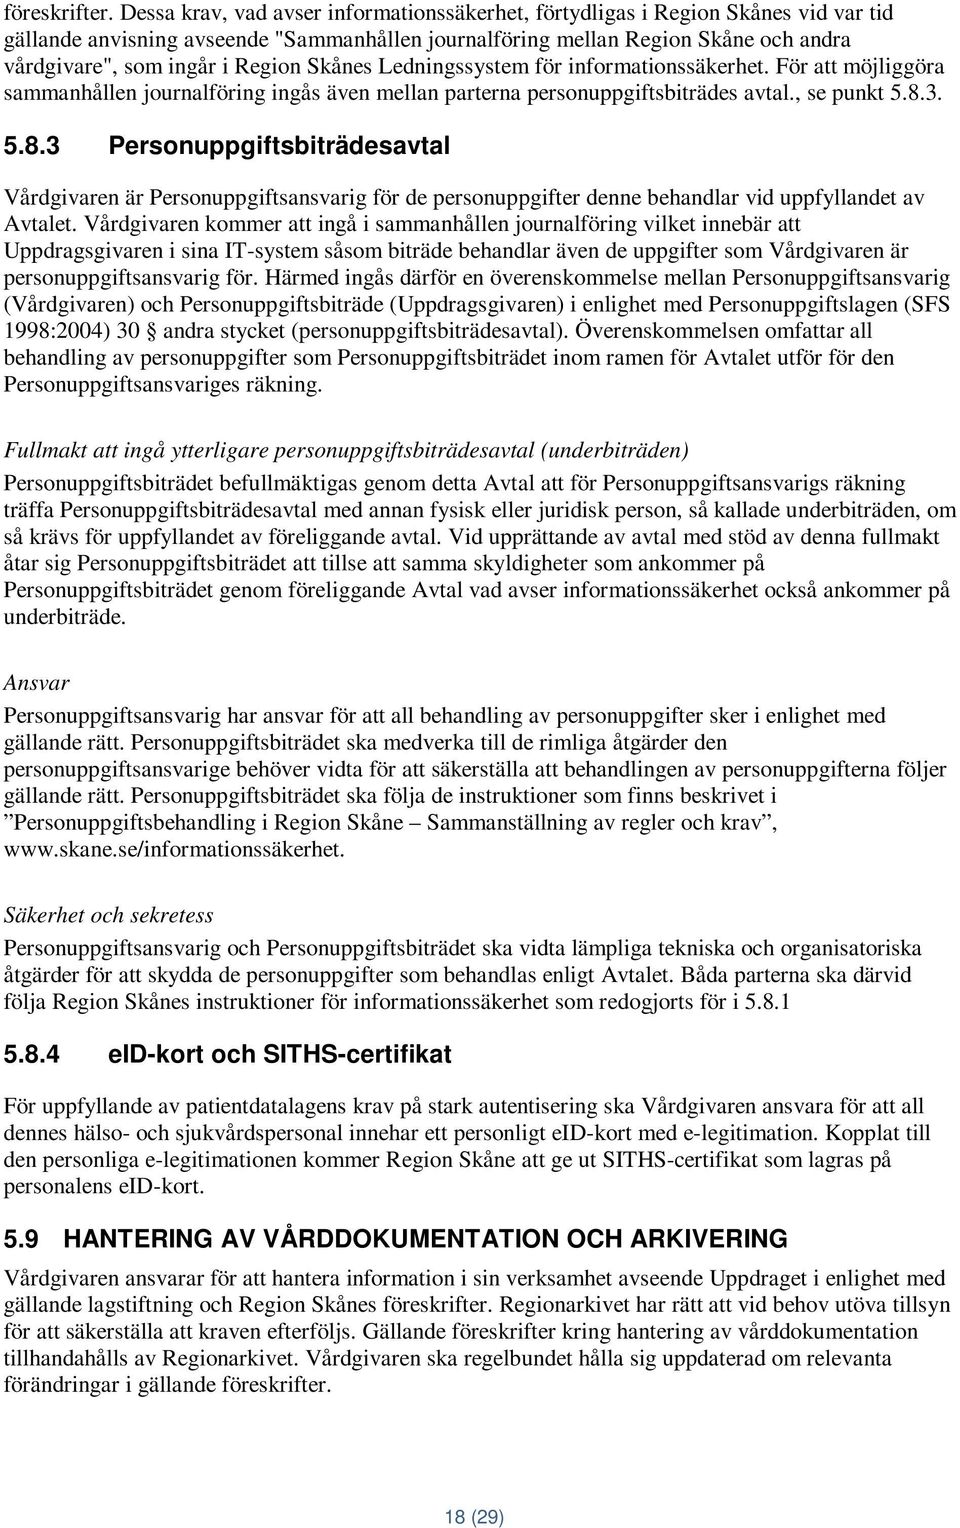 Region Skånes Ledningssystem för informationssäkerhet. För att möjliggöra sammanhållen journalföring ingås även mellan parterna personuppgiftsbiträdes avtal., se punkt 5.8.